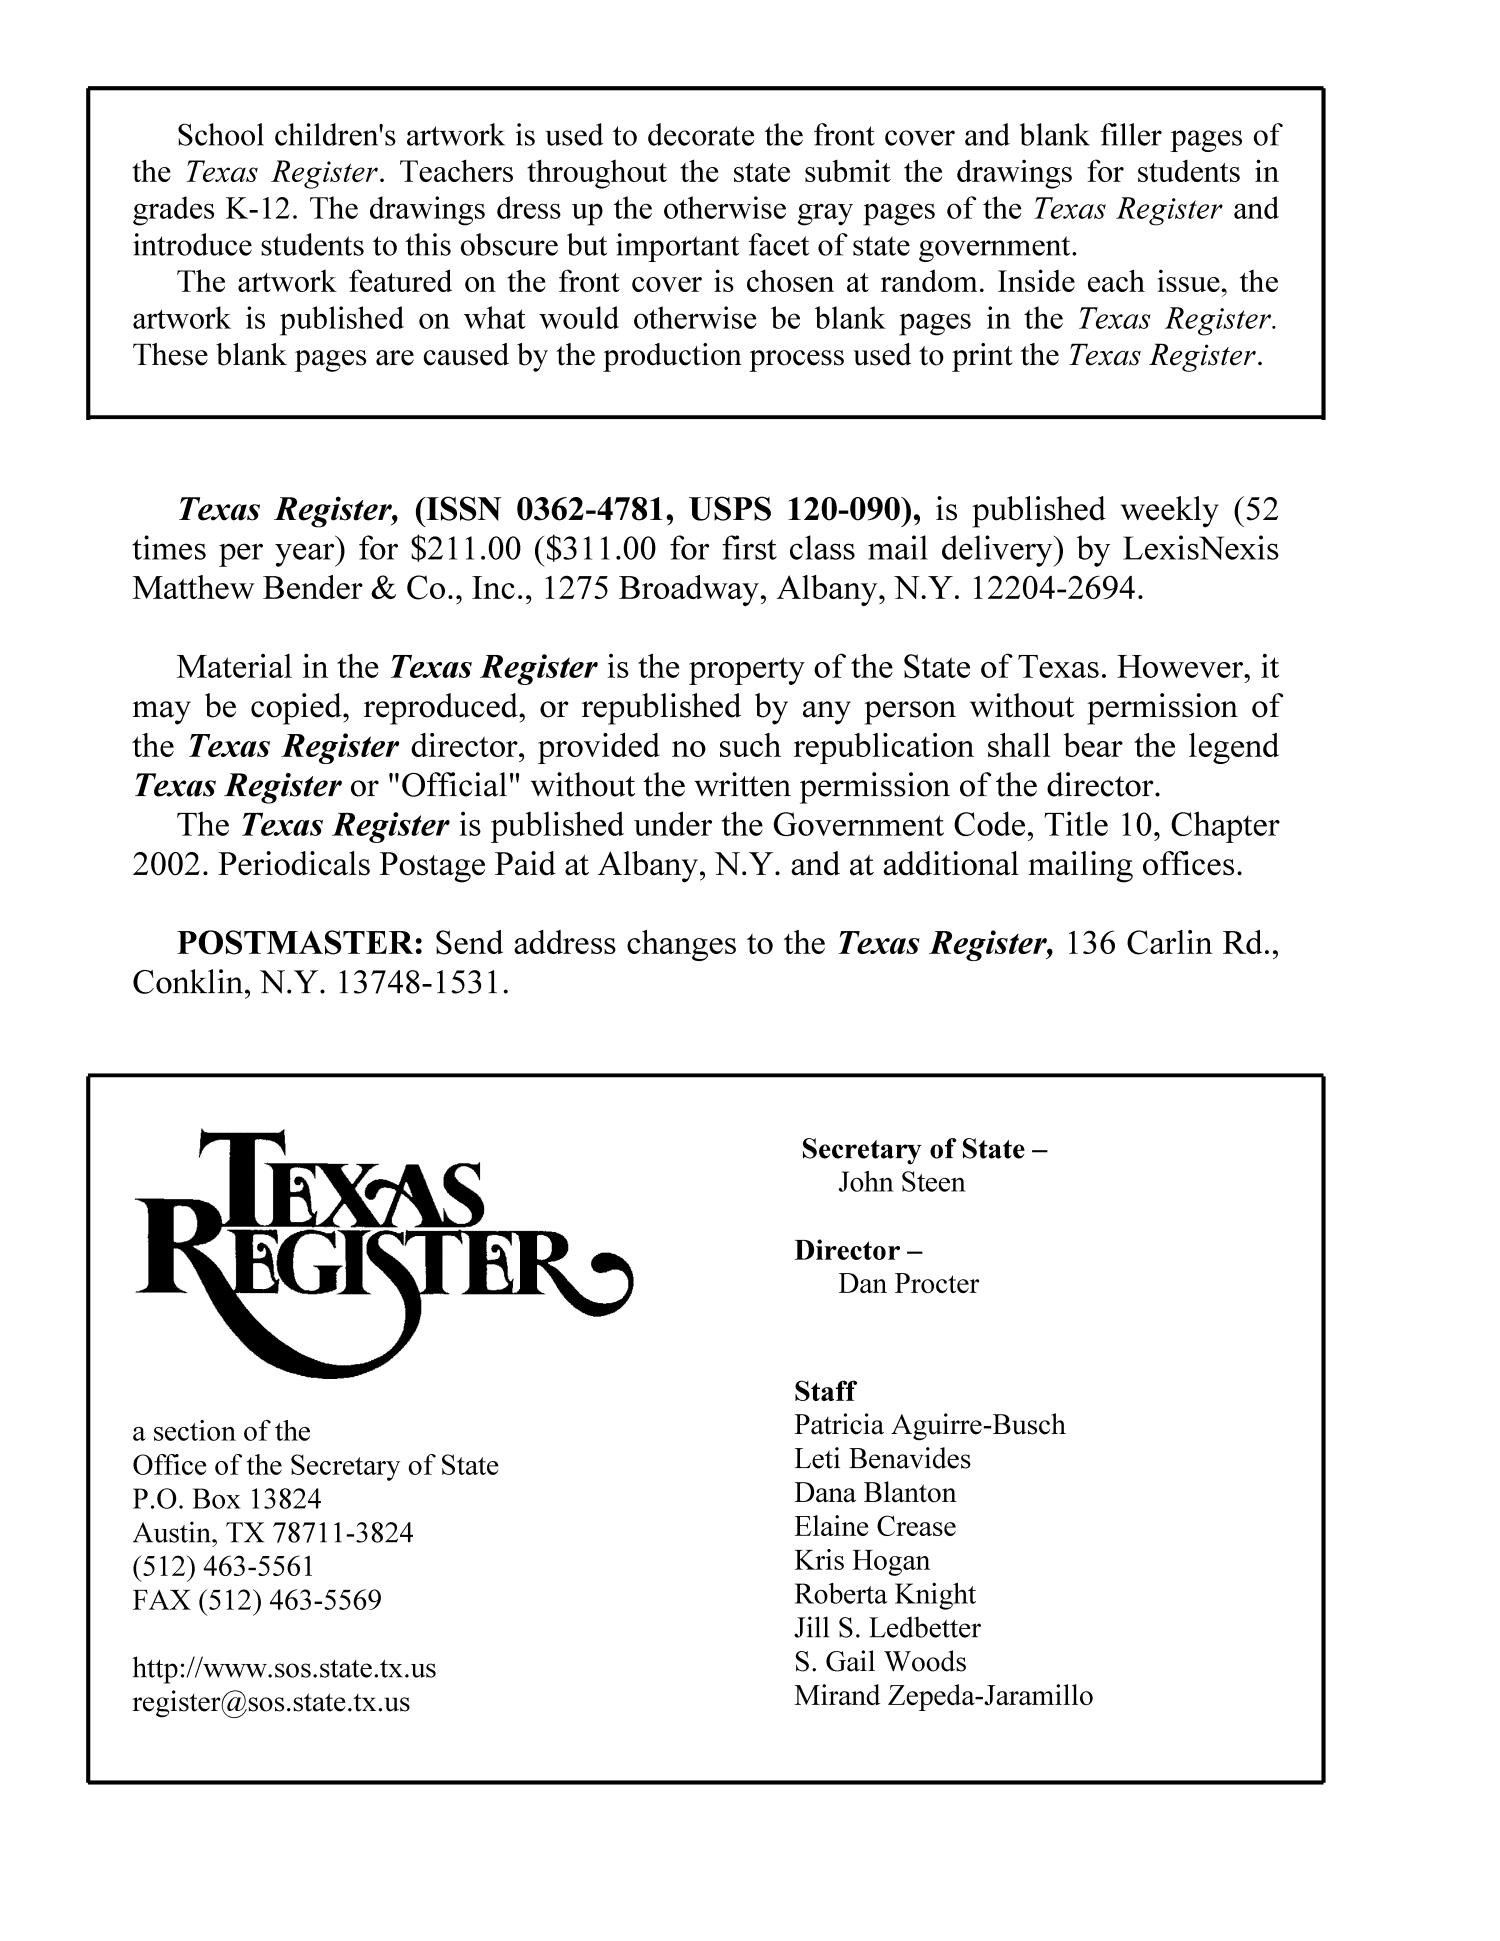 Texas Register, Volume 38, Number 17, Pages 2571-2712, April 26, 2013
                                                
                                                    2572
                                                